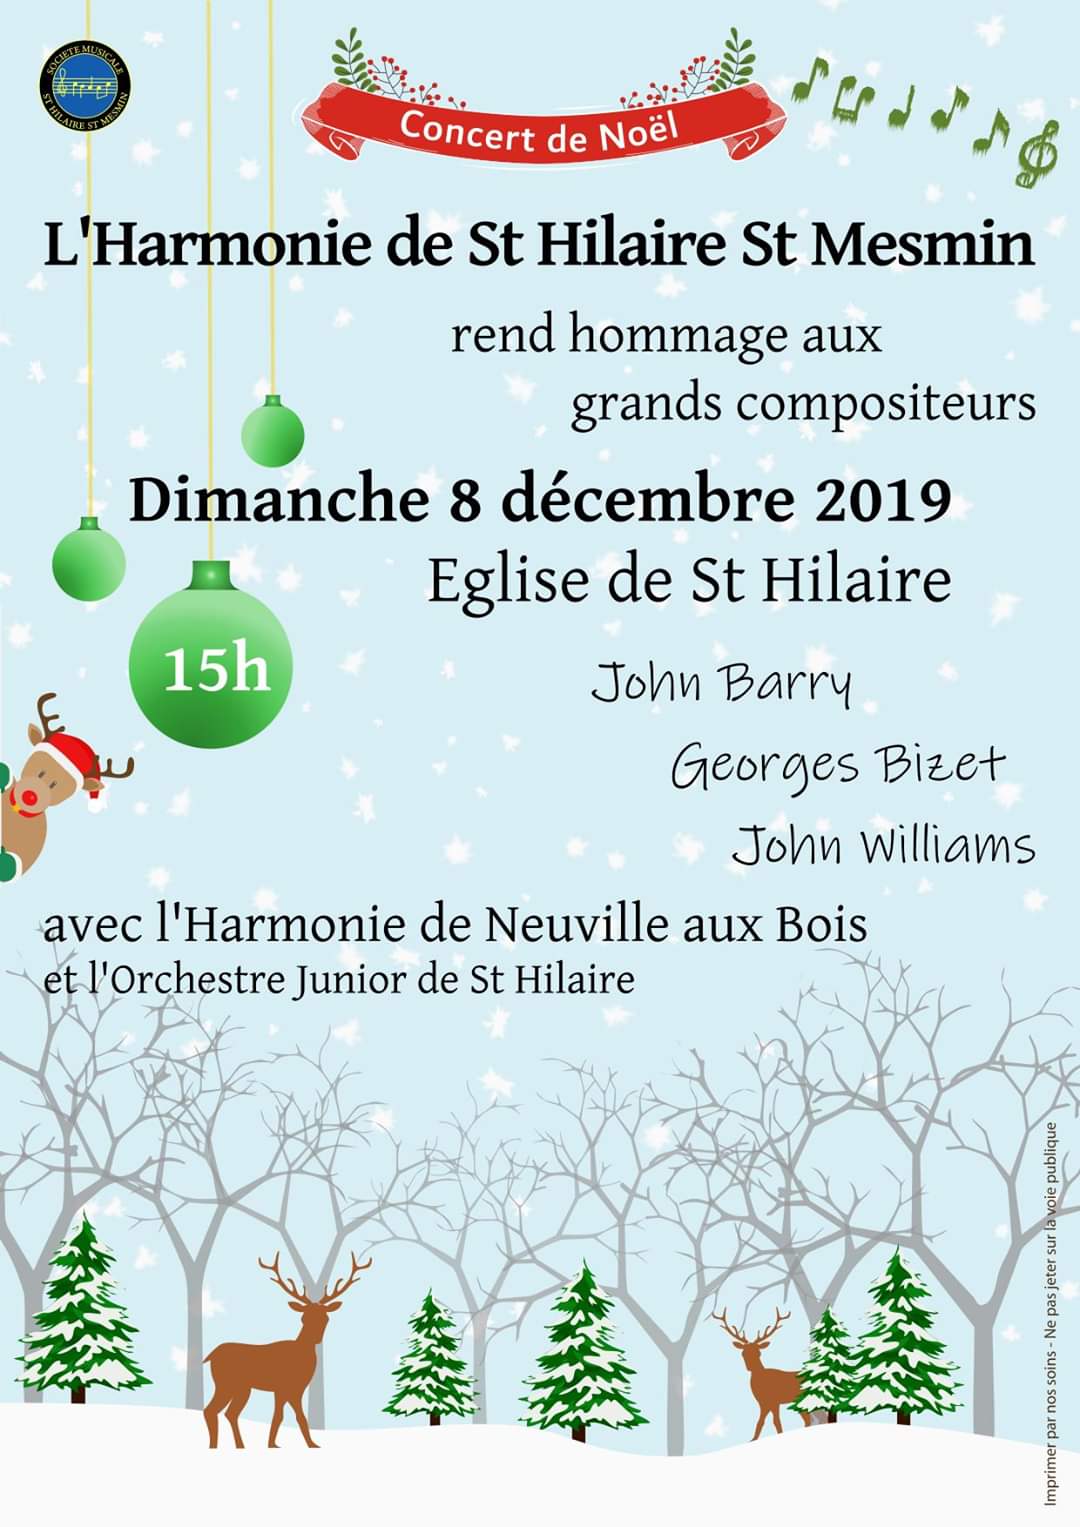 Concert noel St Hilaire 12 19